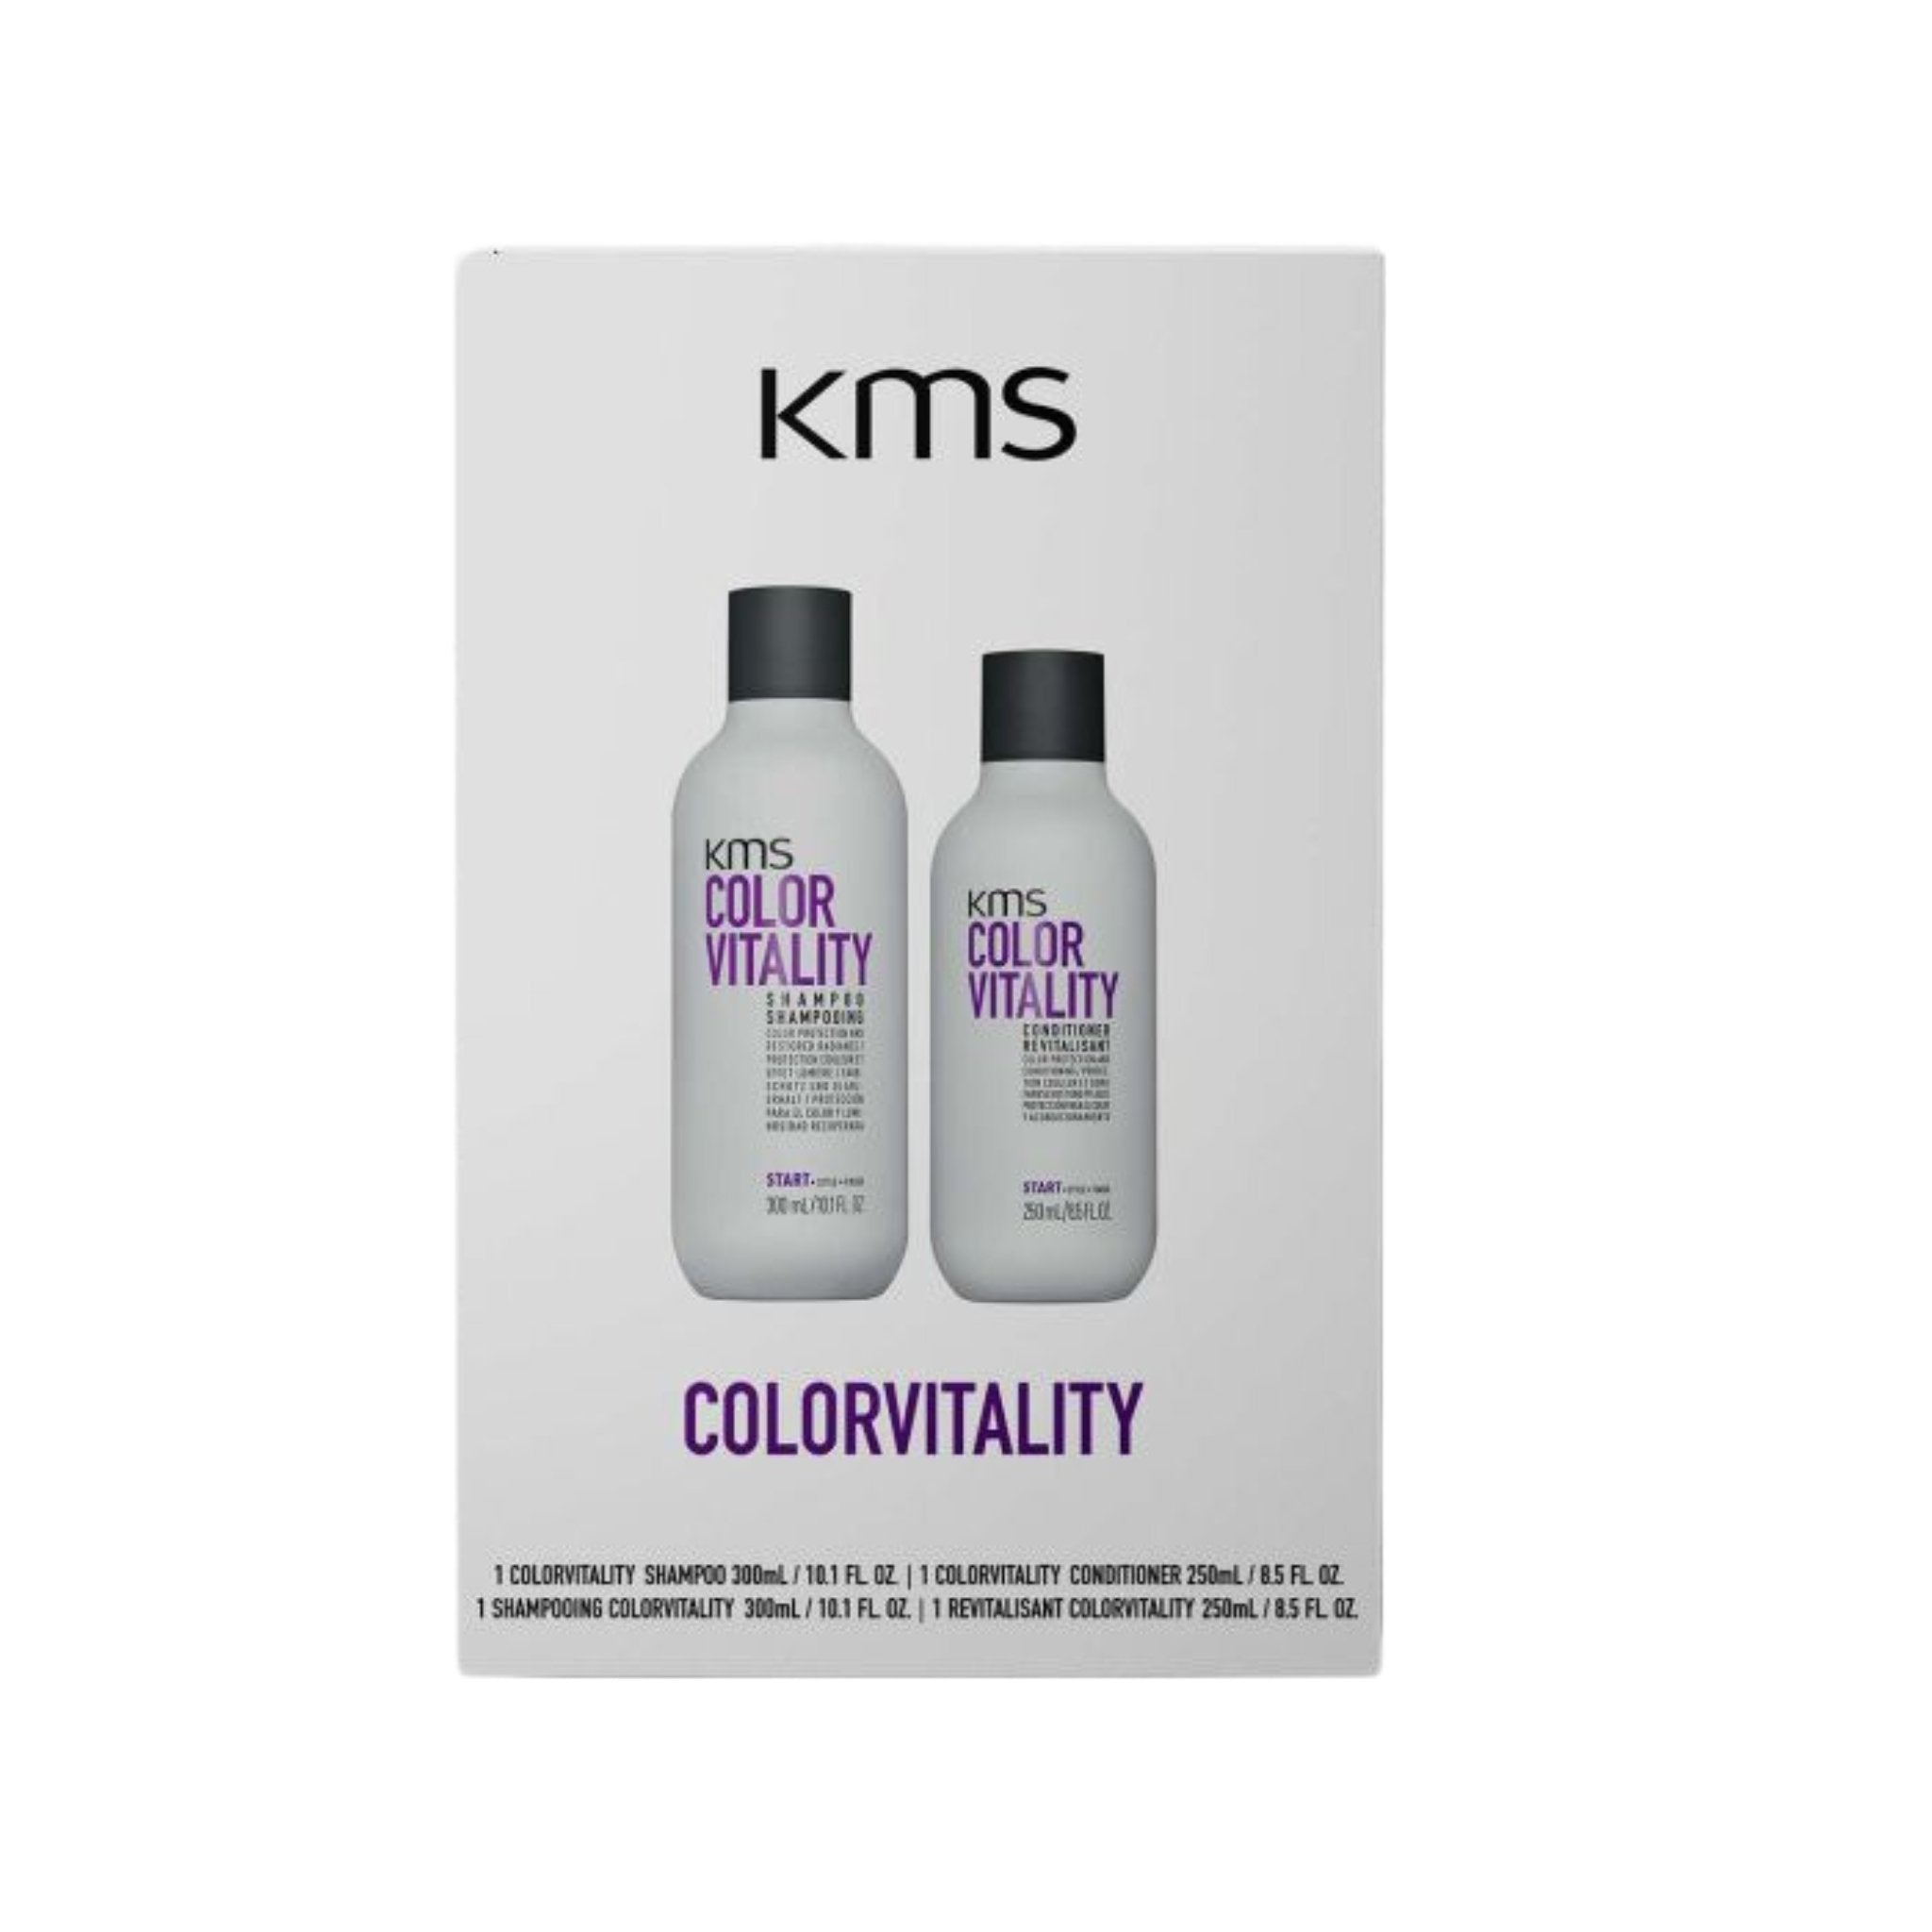 Kms. Duo Printanier Color Vitality - Concept C. Shop